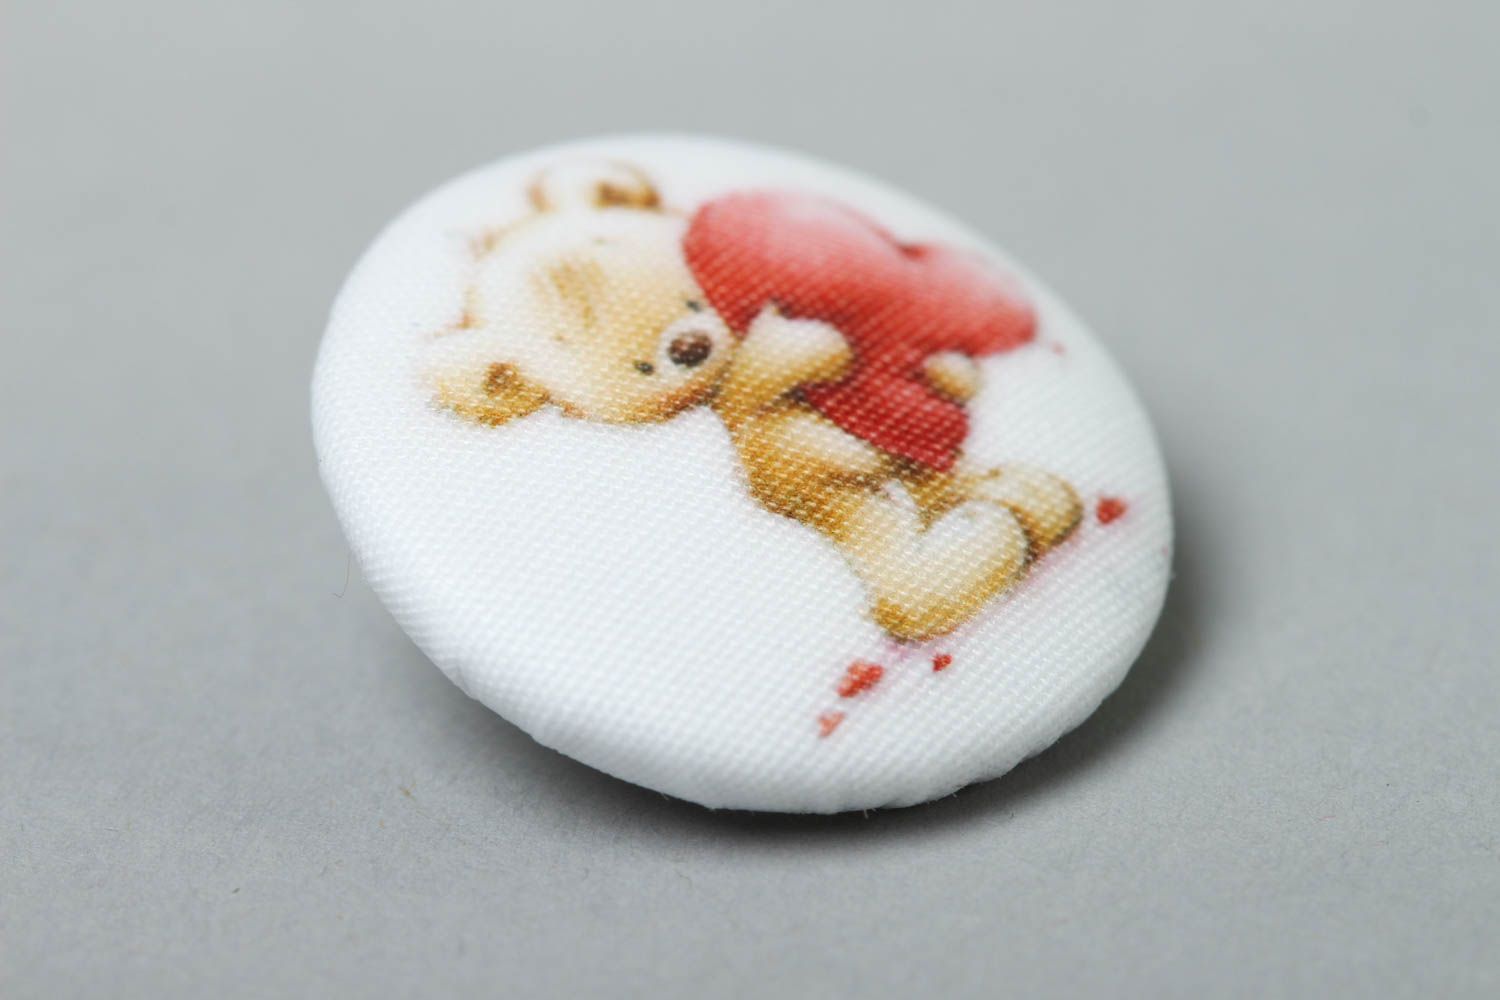 Фурнитура для шитья хенд мейд красивая пуговица мишка аксессуар для одежды фото 2